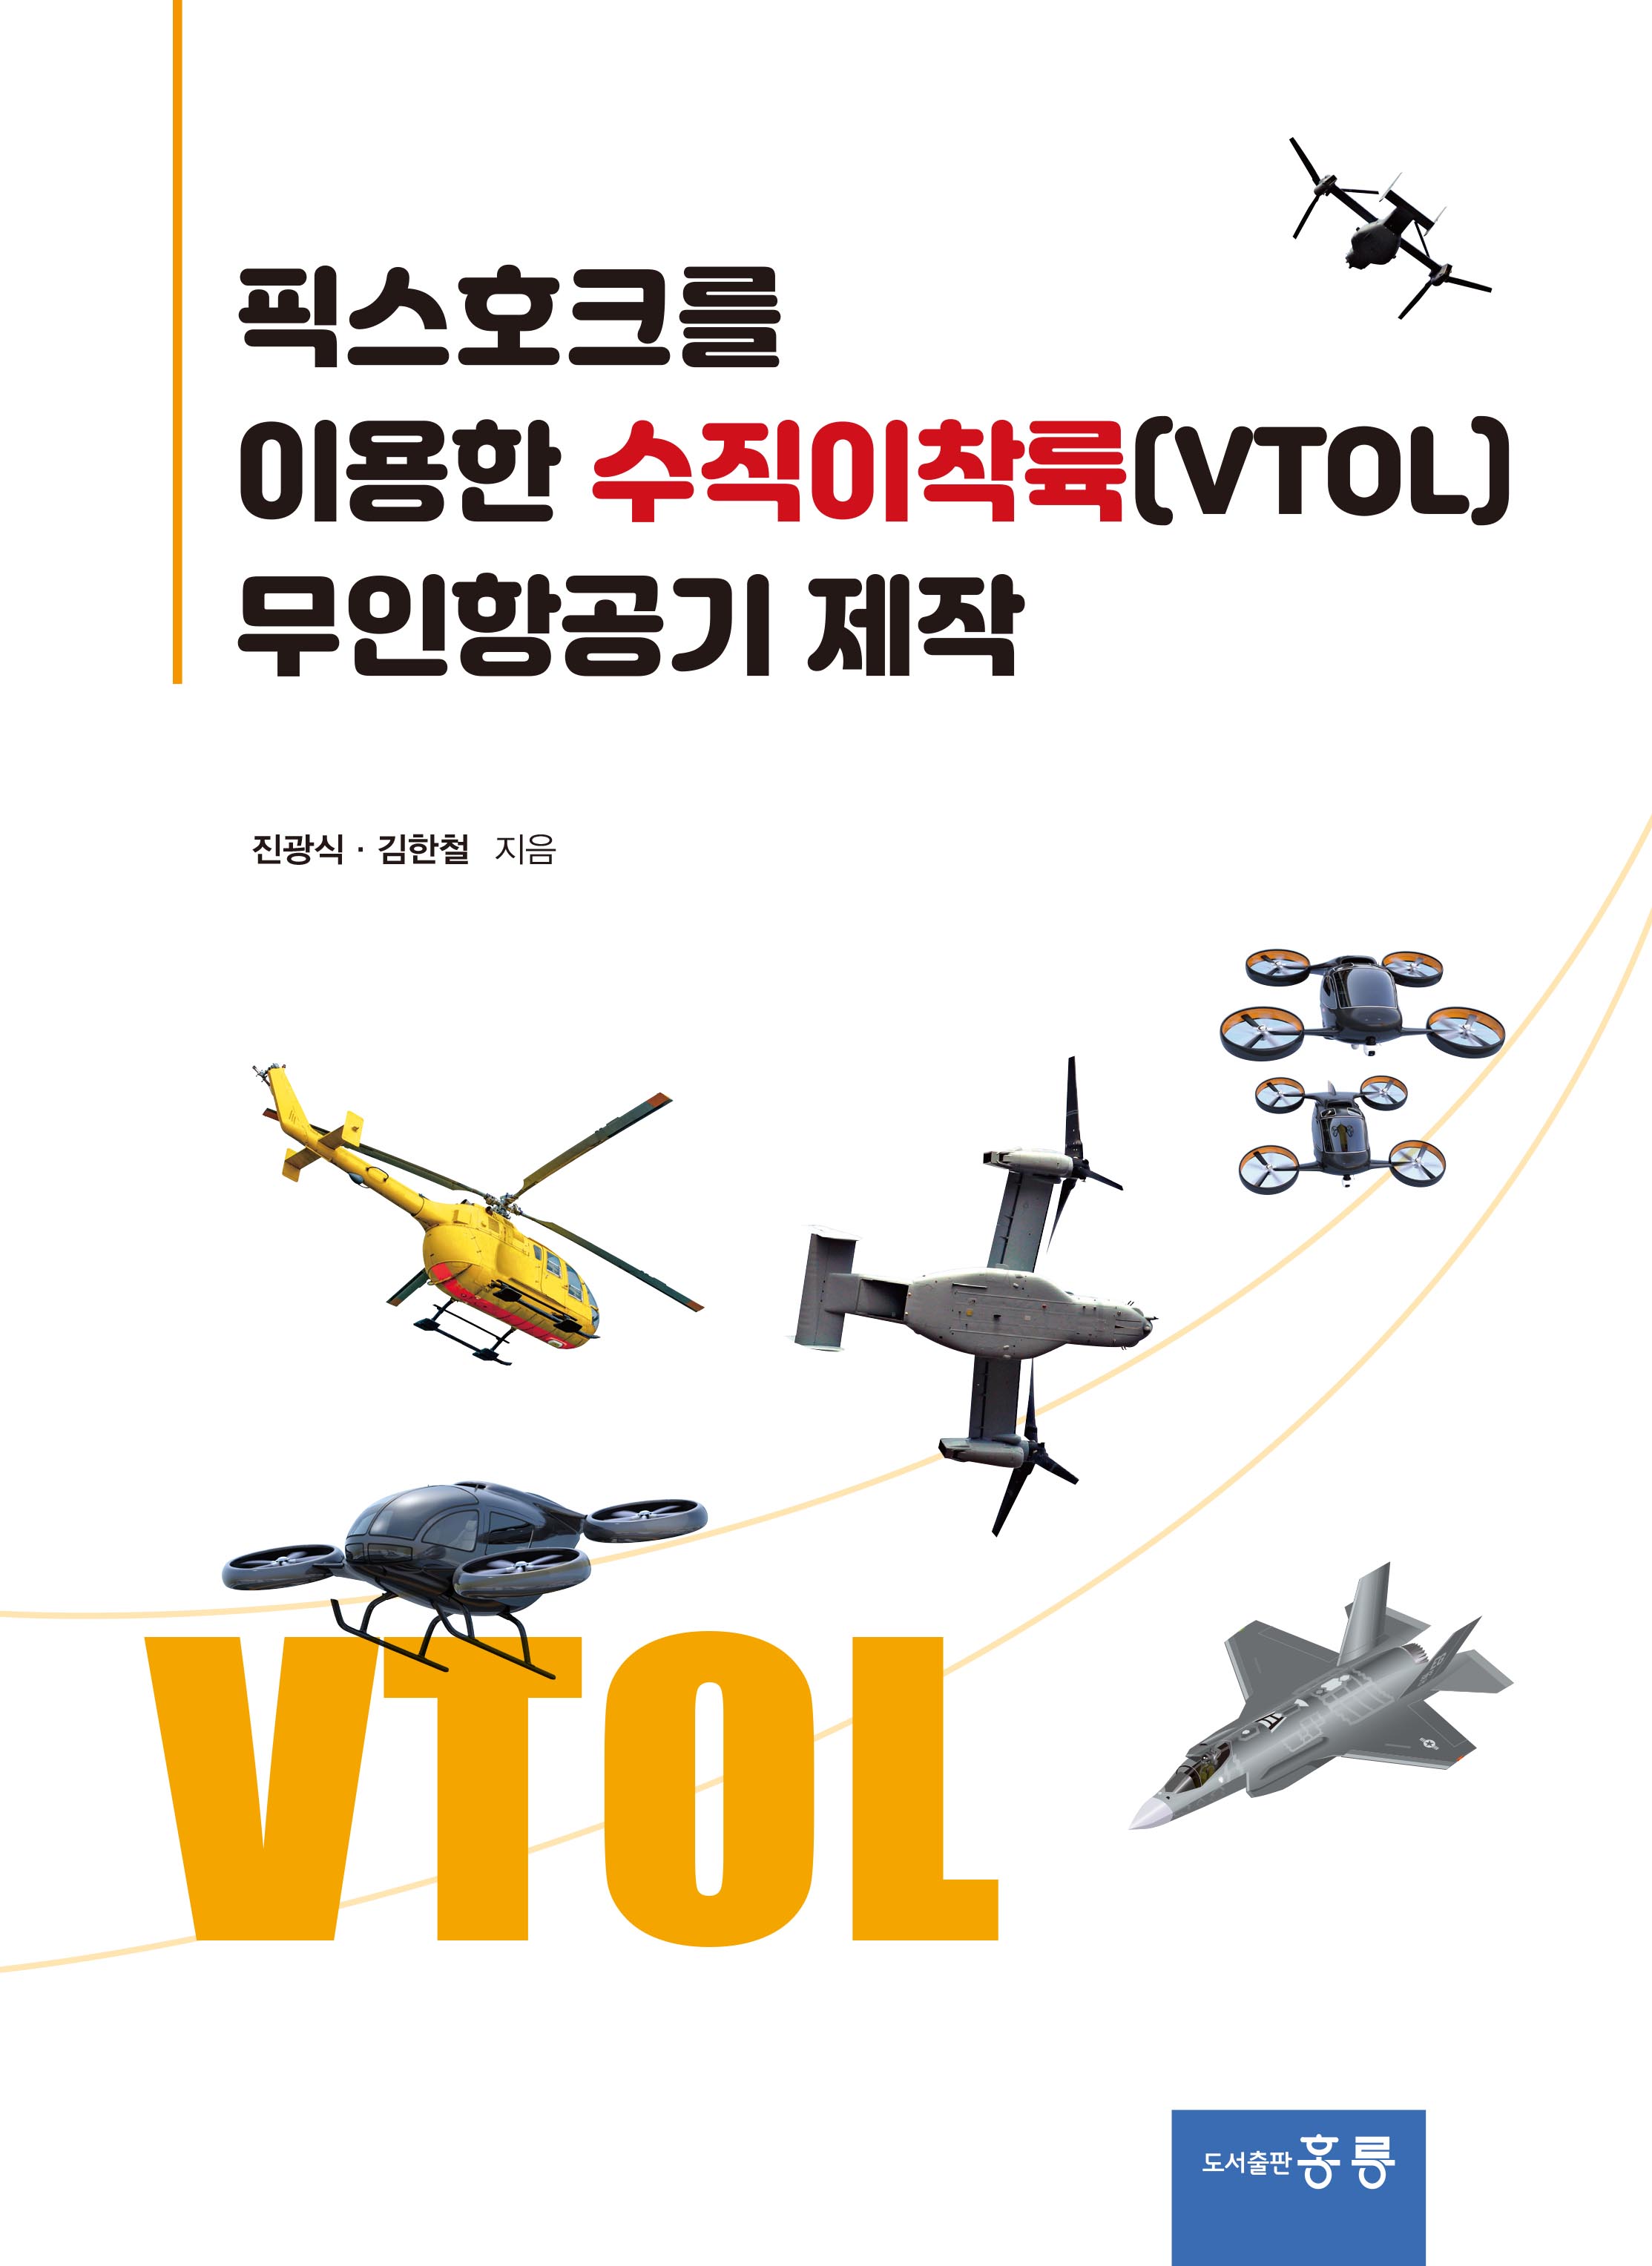 픽스호크를 이용한 수직이착륙(VTOL) 무인항공기 제작